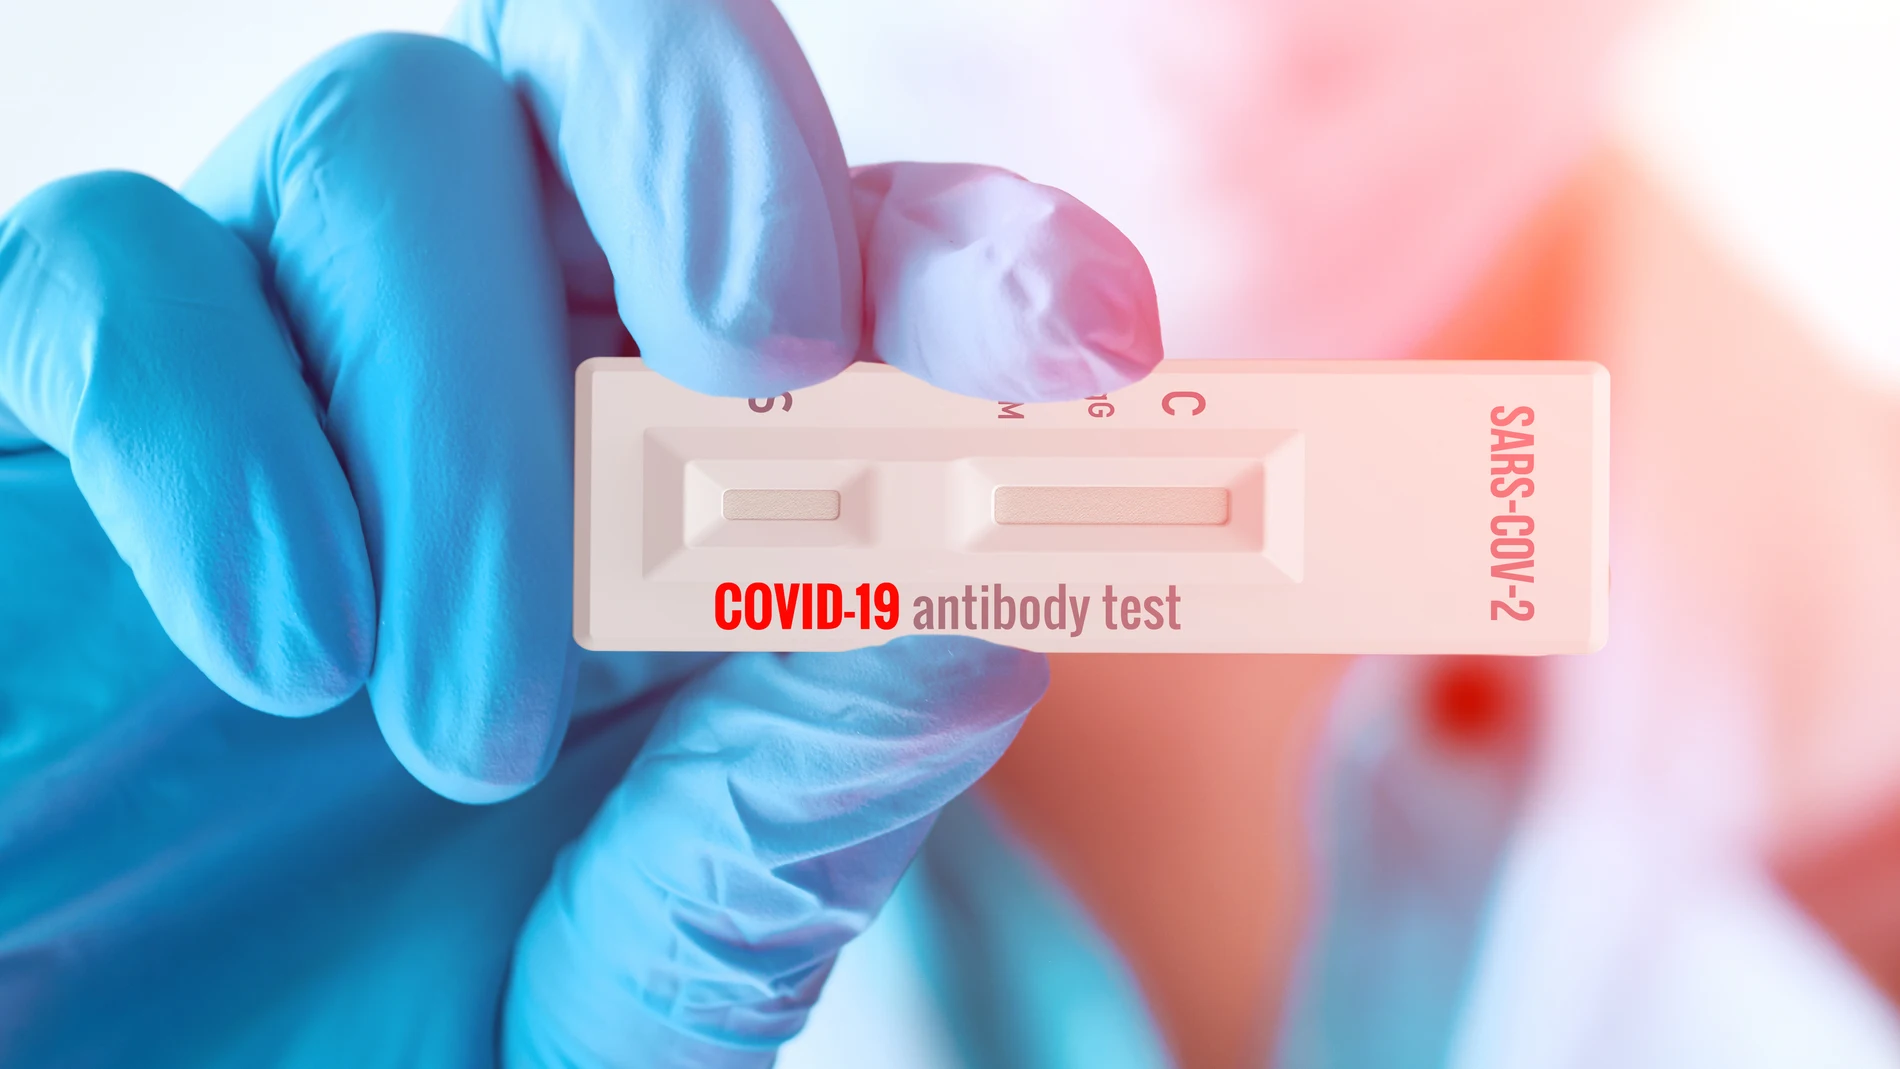 El médico muestra una prueba rápida de laboratorio COVID-19 para la detección de anticuerpos IgM e IgG contra el nuevo coronavirus, SARS-CoV-2.